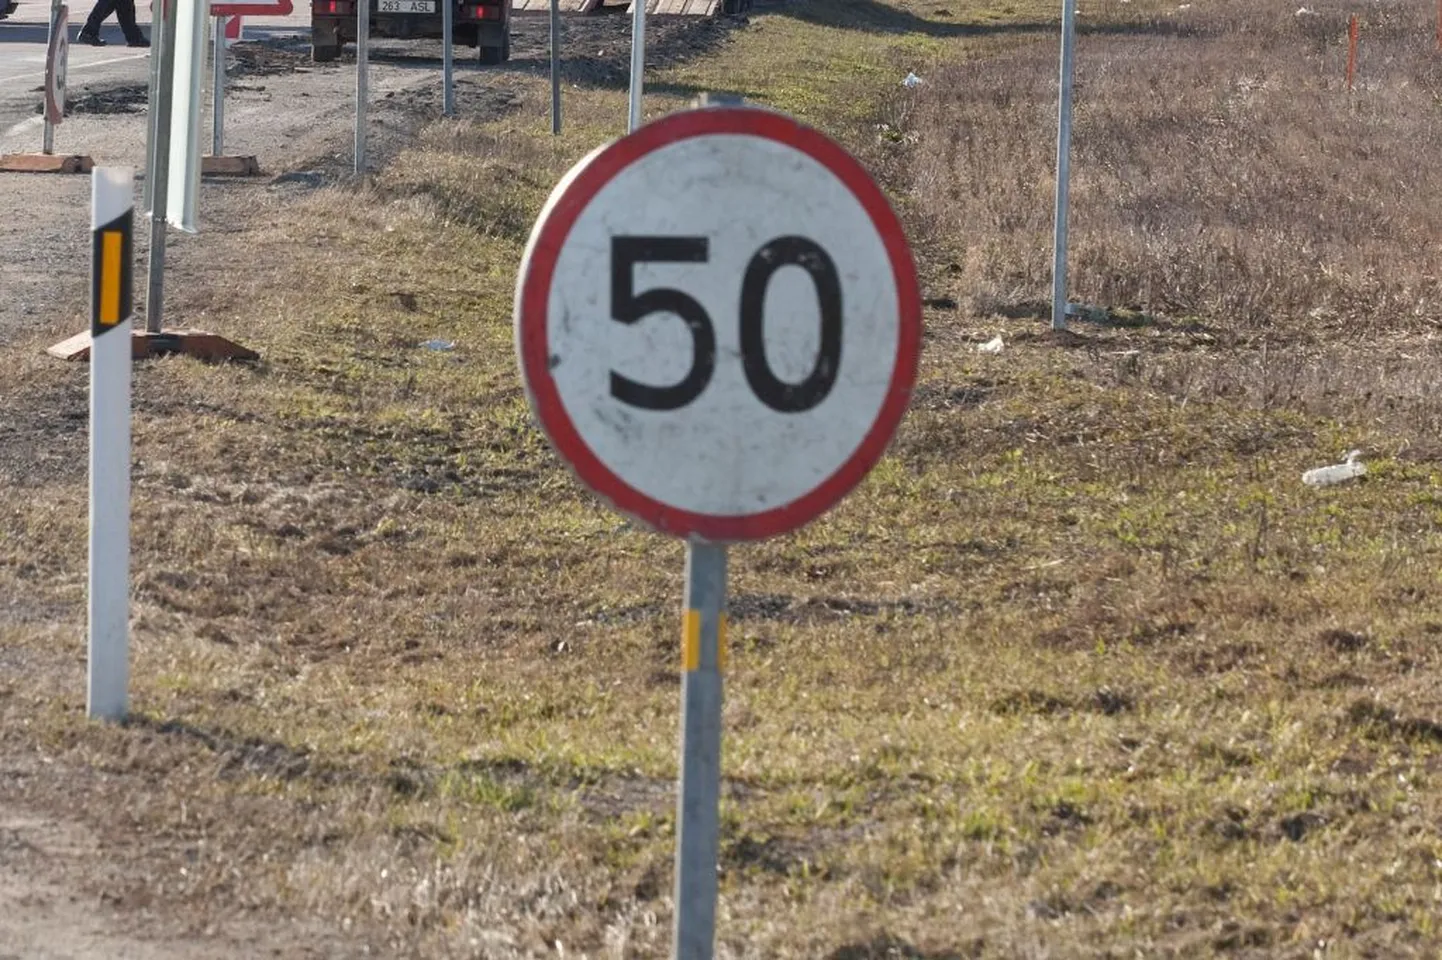 Kiirusepiirangut tähistav liiklusmärk. Foto on illustratiivne.